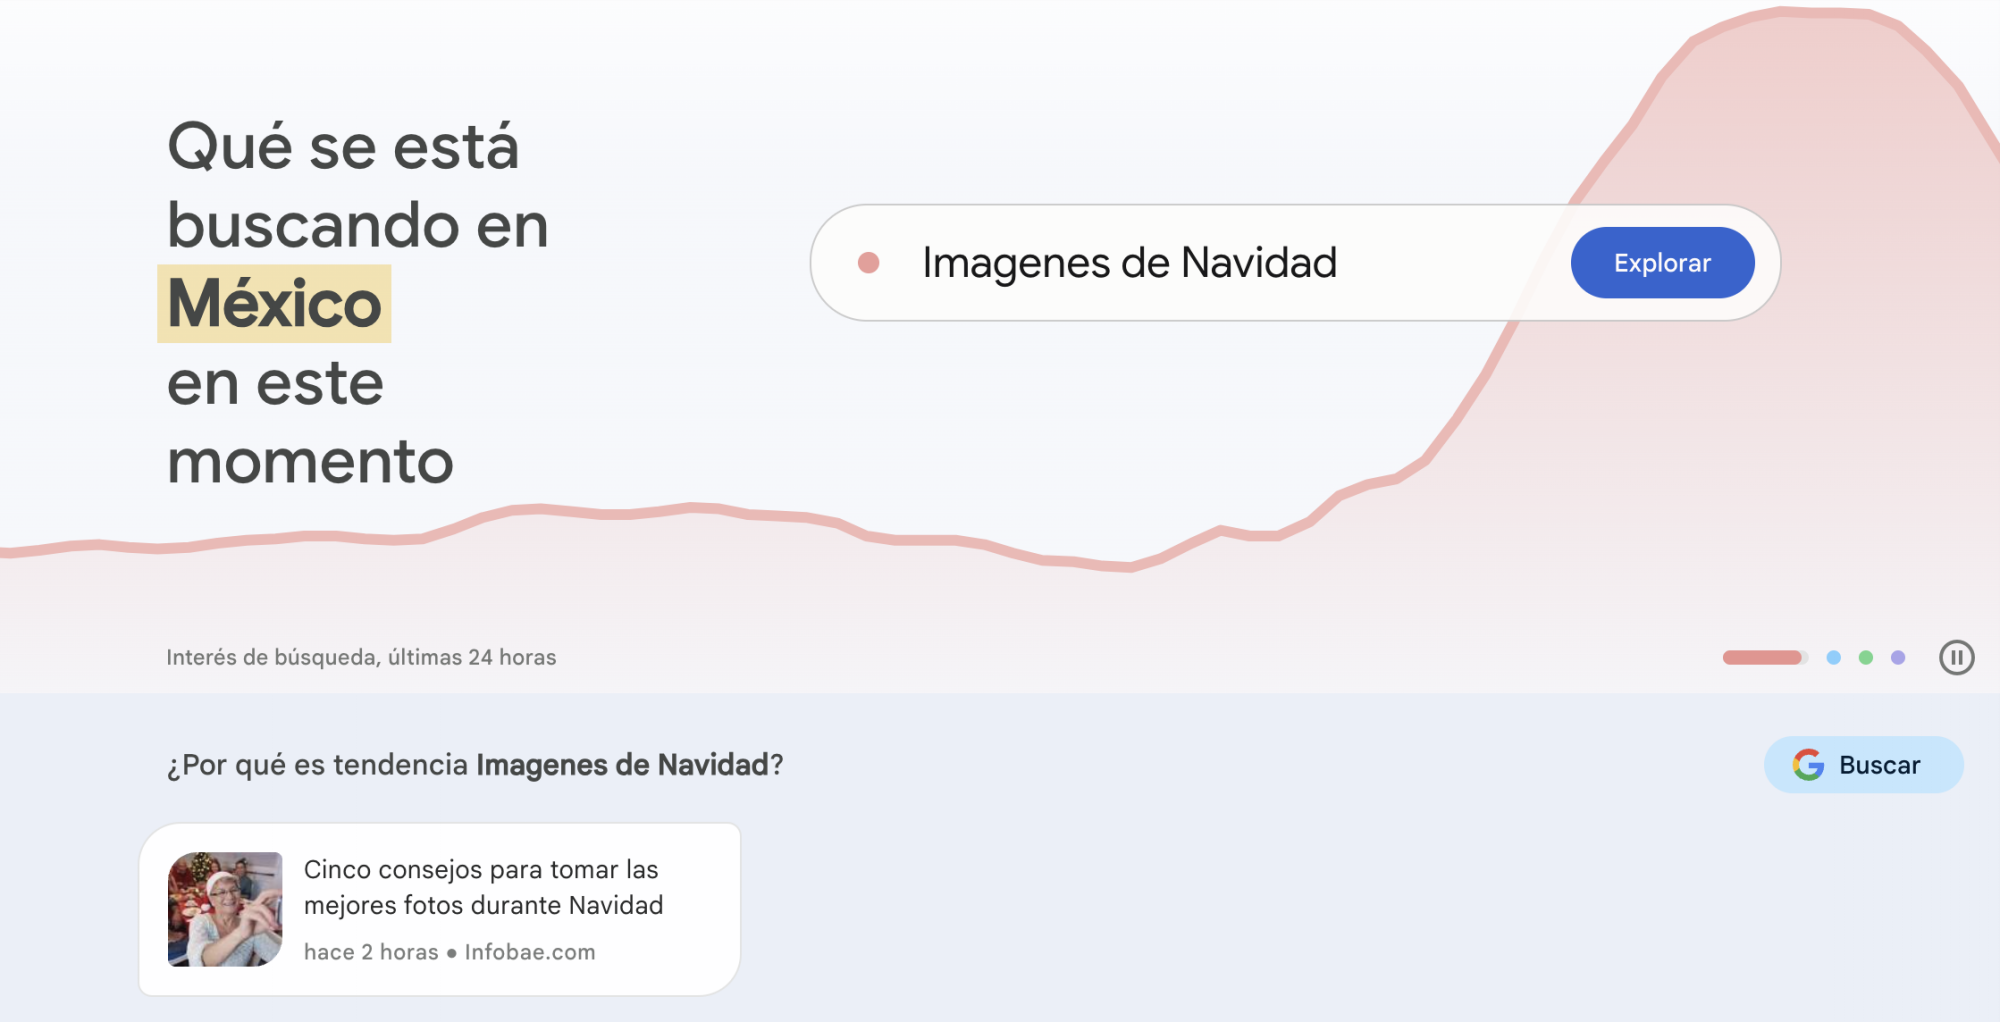 $!En vísperas de Noche Buena y Navidad ¿Qué es lo más buscado en Google desde México?